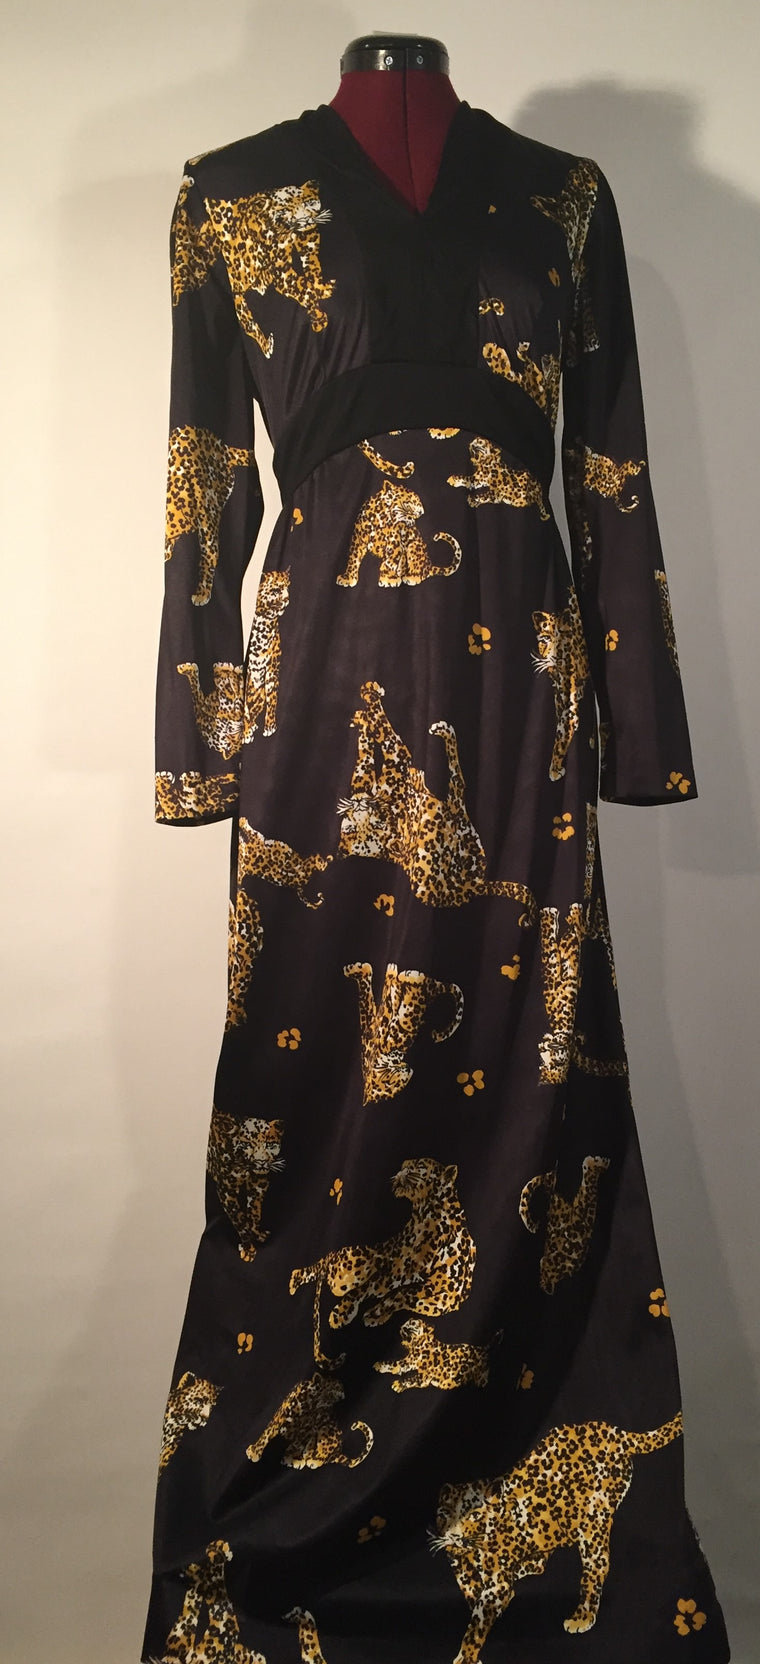 Vintage Black with Cheetah Print Gown